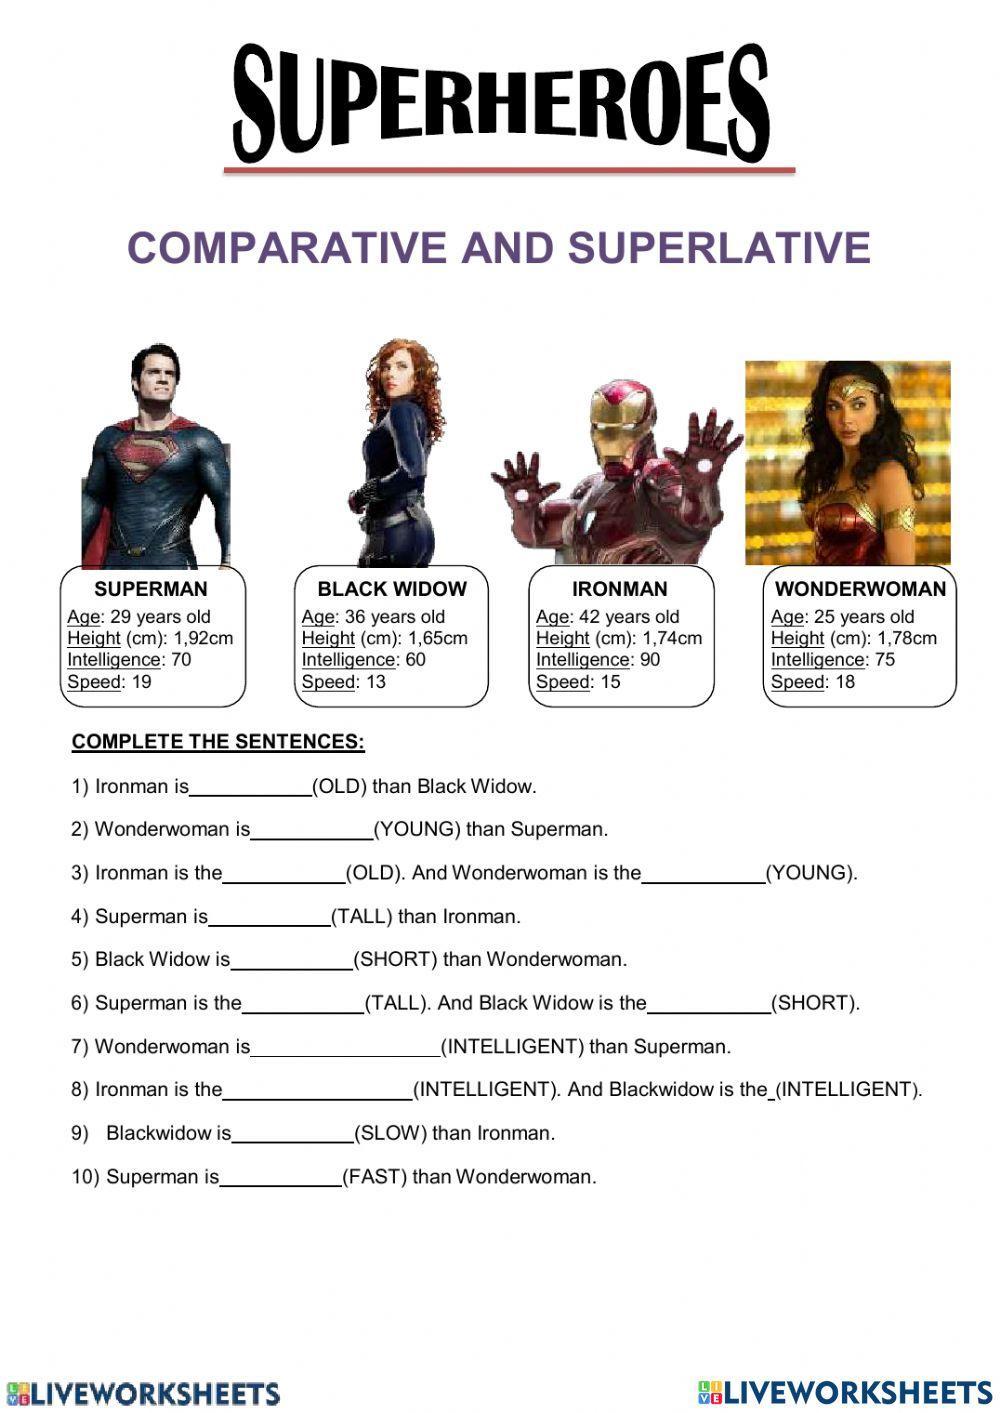 Comparative and superlative adjetives